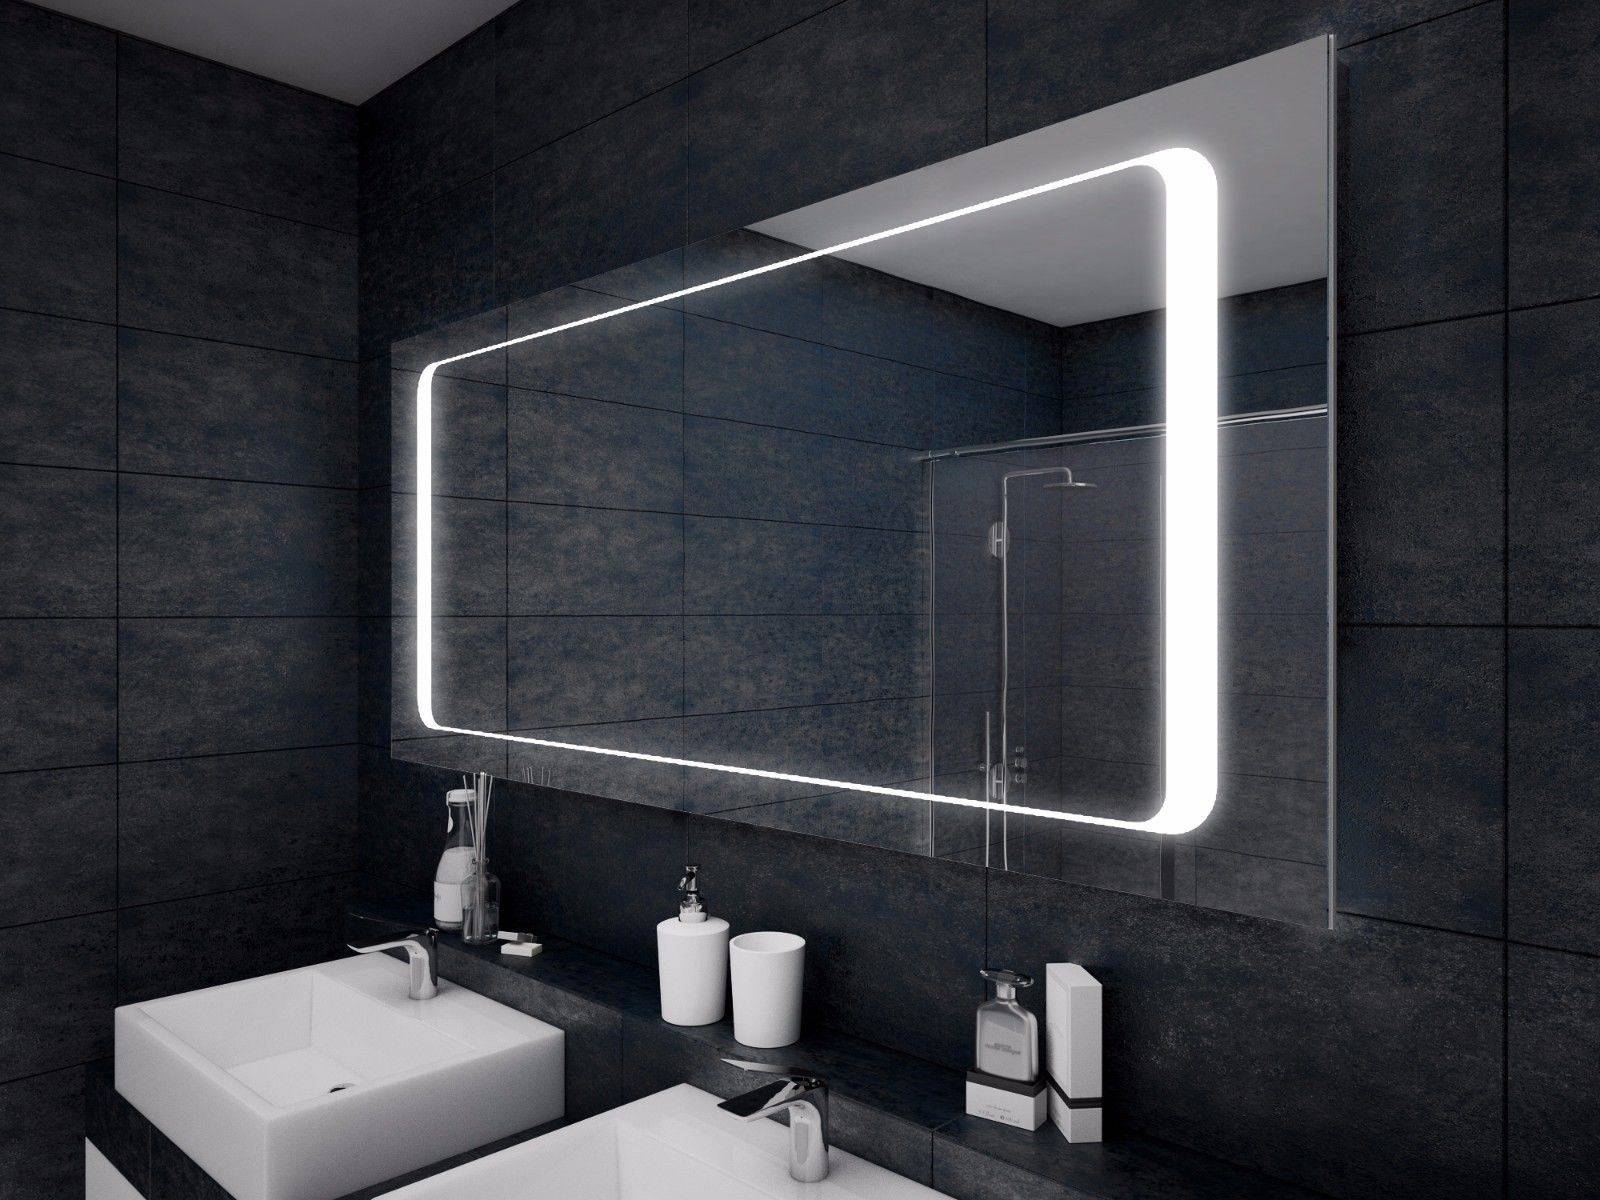 Круглое зеркало с подсветкой для ванной - особенности, достоинства и недостатки